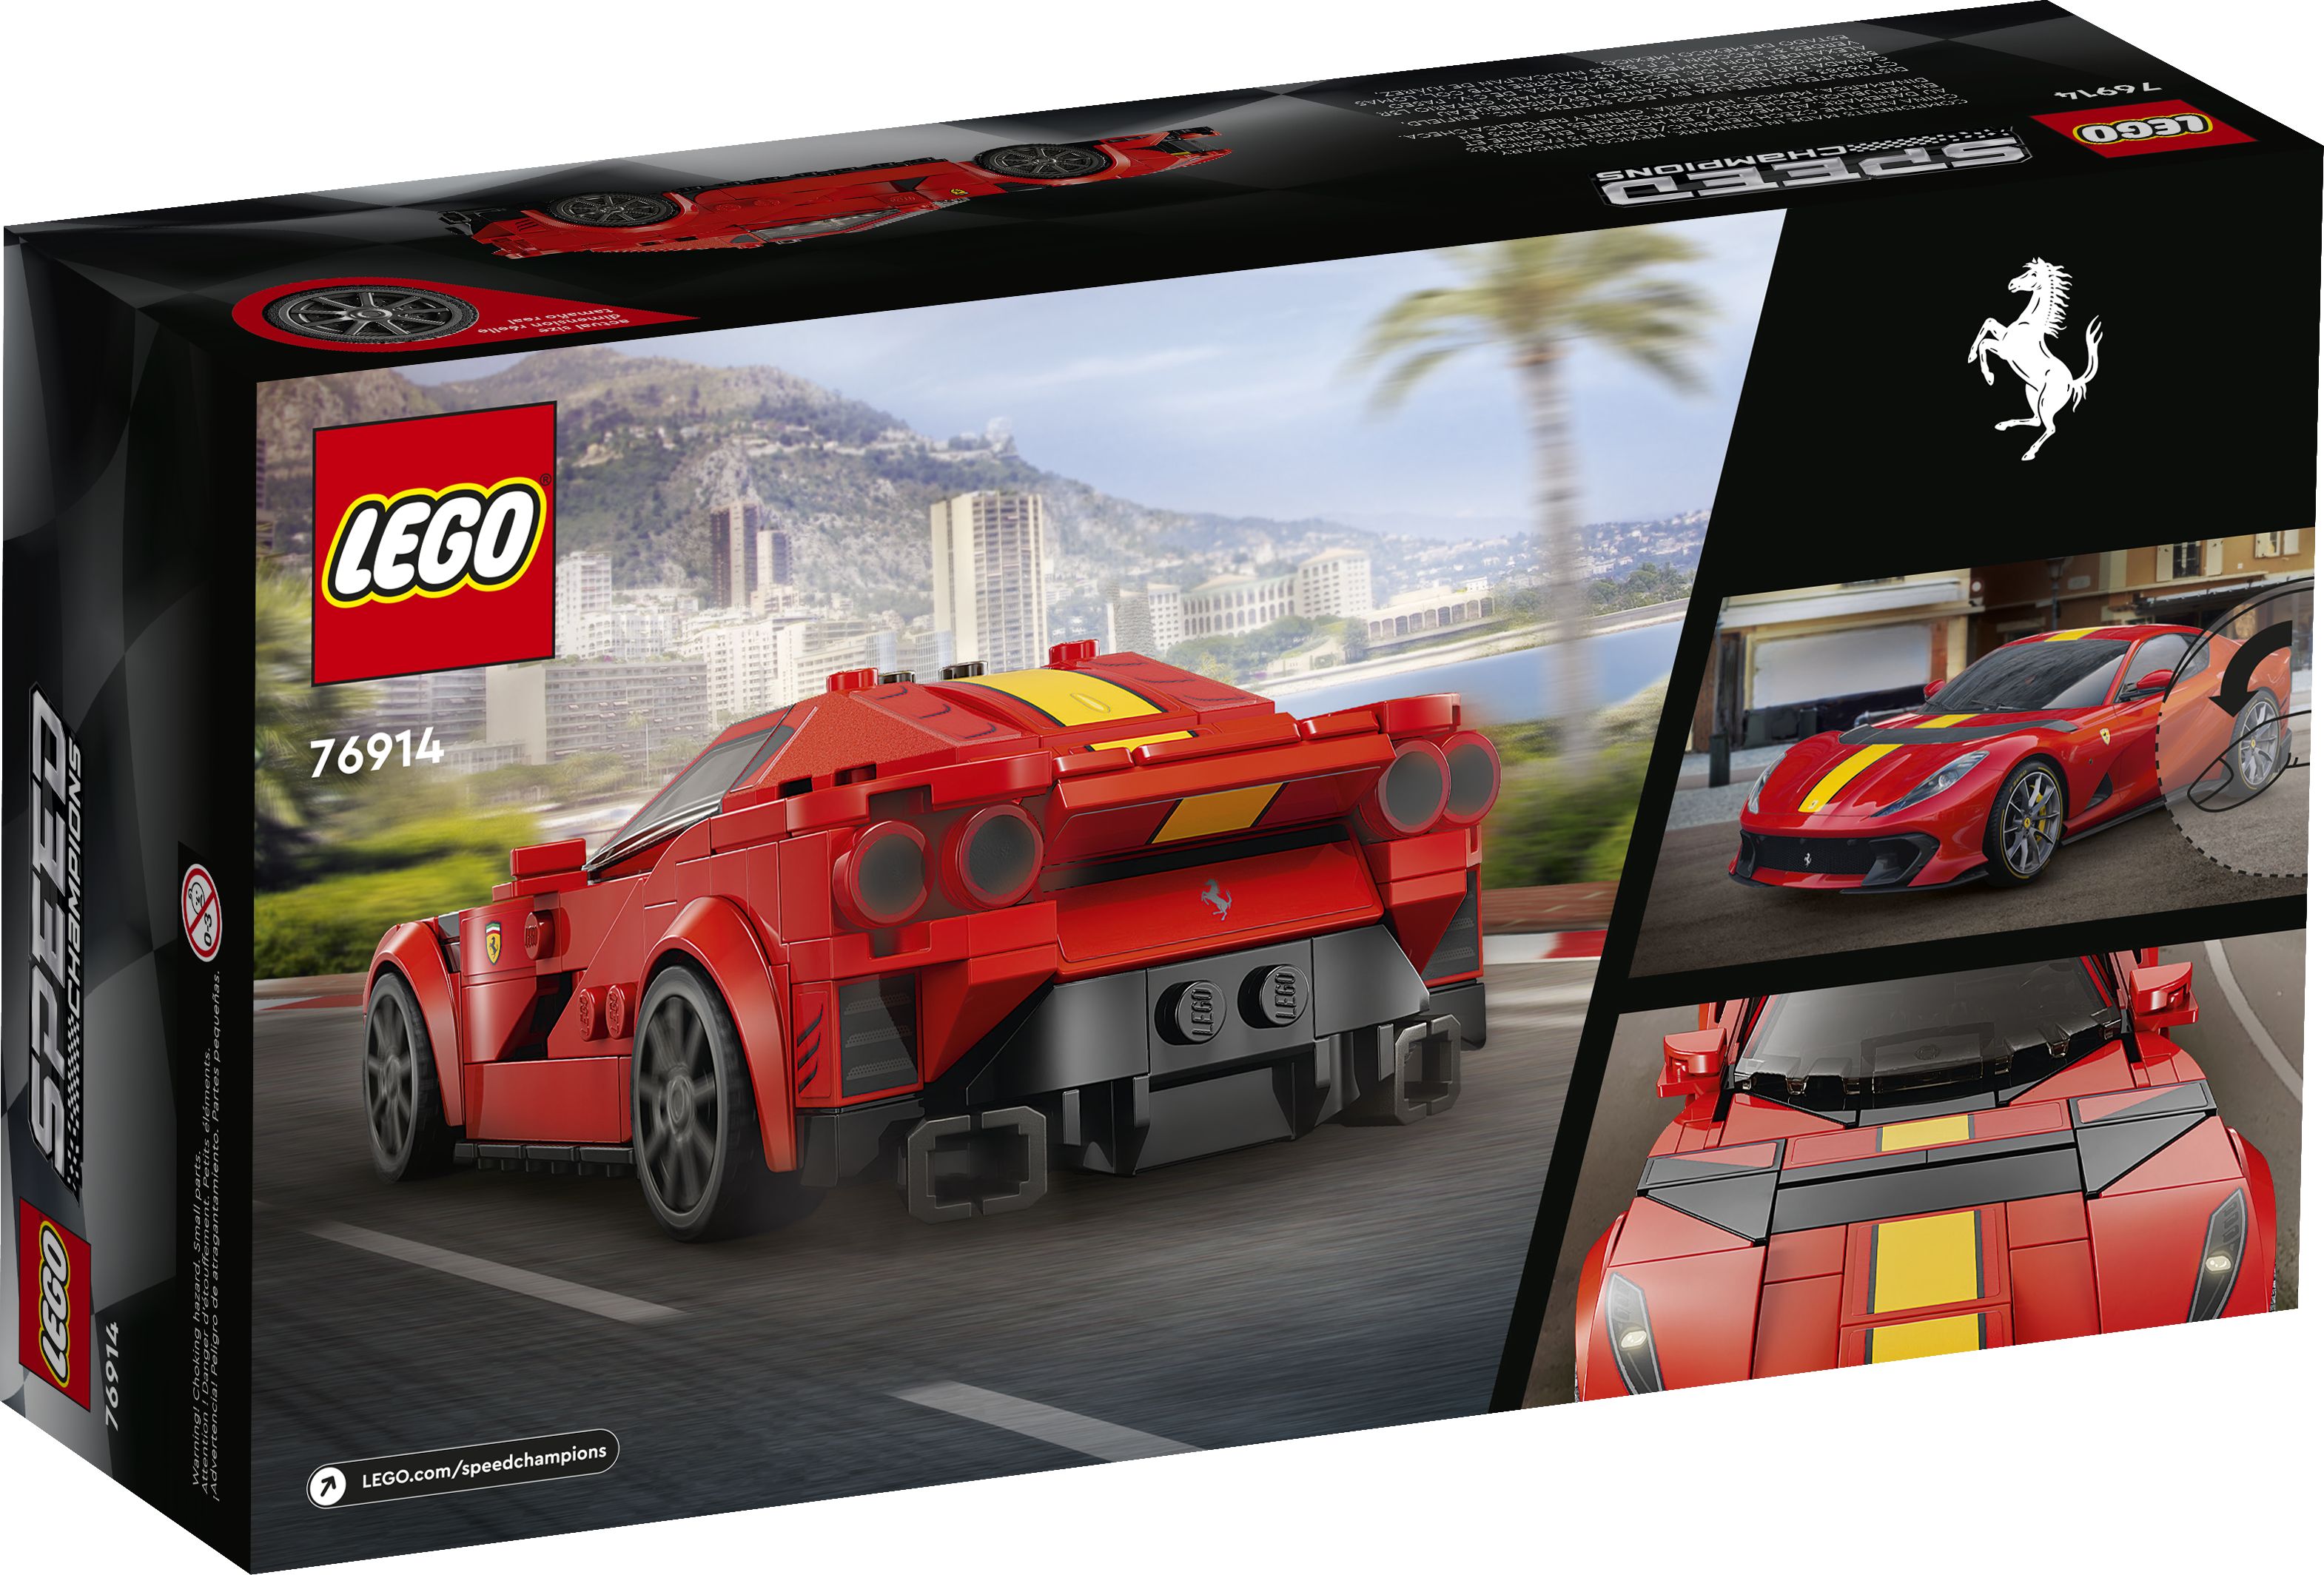 LEGO Speed Champions 76914 Ferrari 812 Competizione LEGO_76914_Box5_v39.jpg